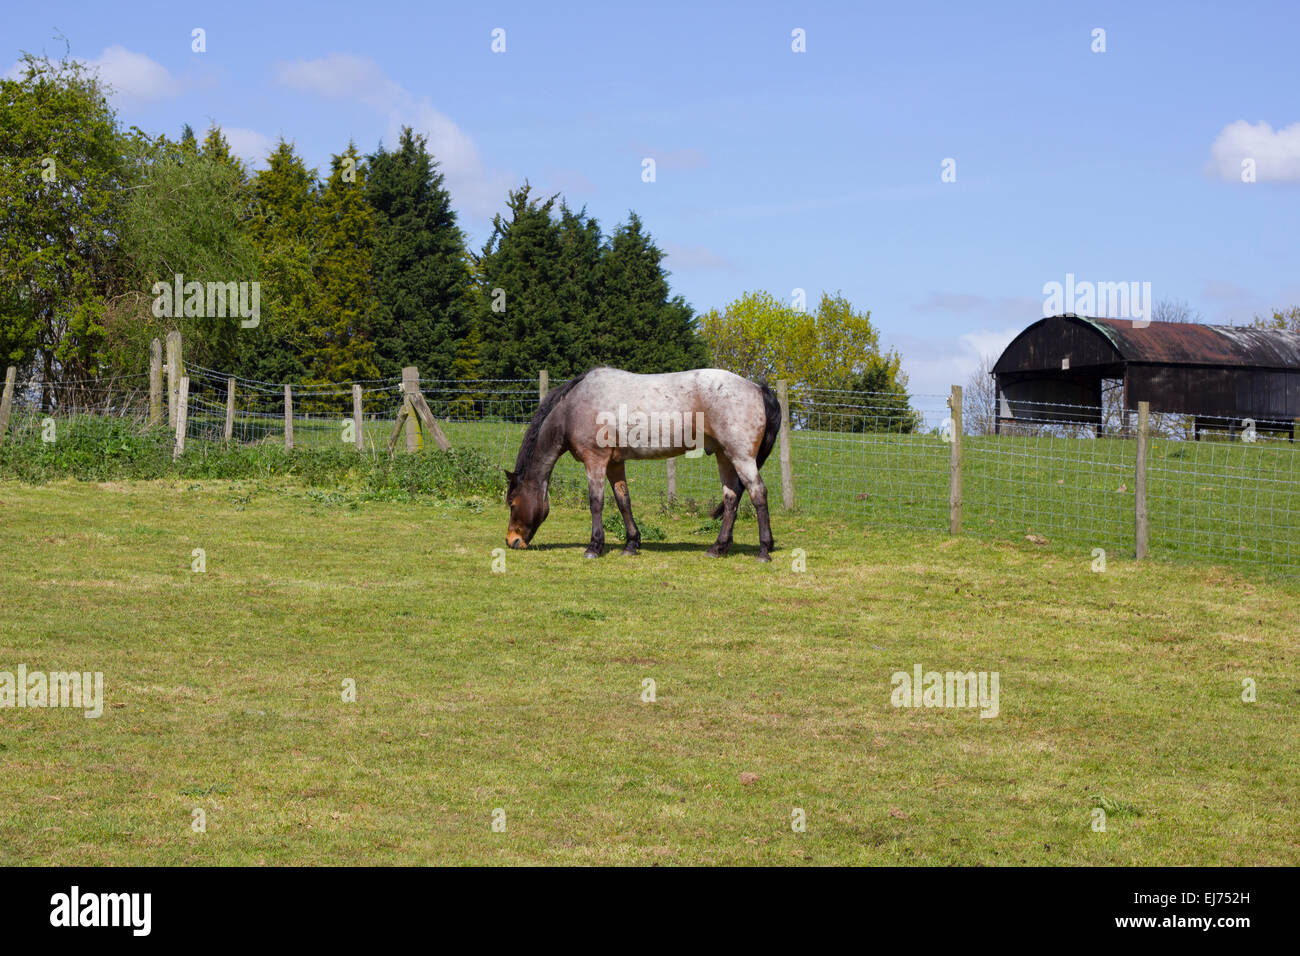 Equestrian paysage, y compris un cheval dans un enclos et une grange métallique à l'arrière terrain avec une ligne d'arbres Banque D'Images